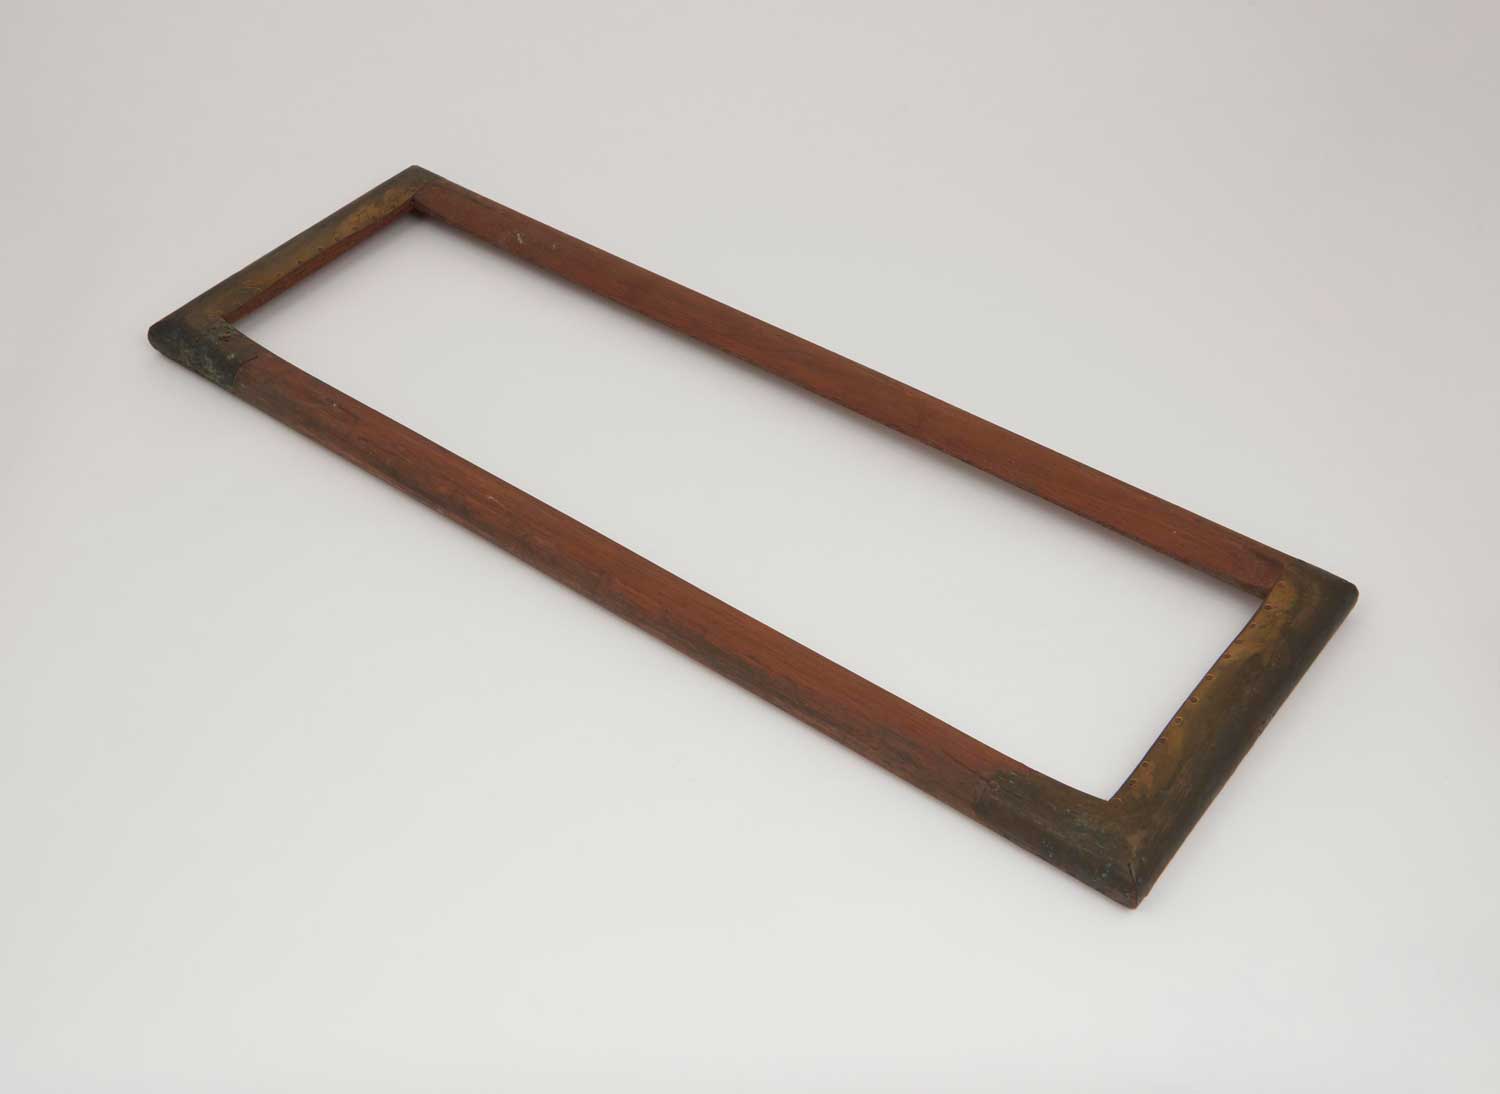 A rectangular wooden frame